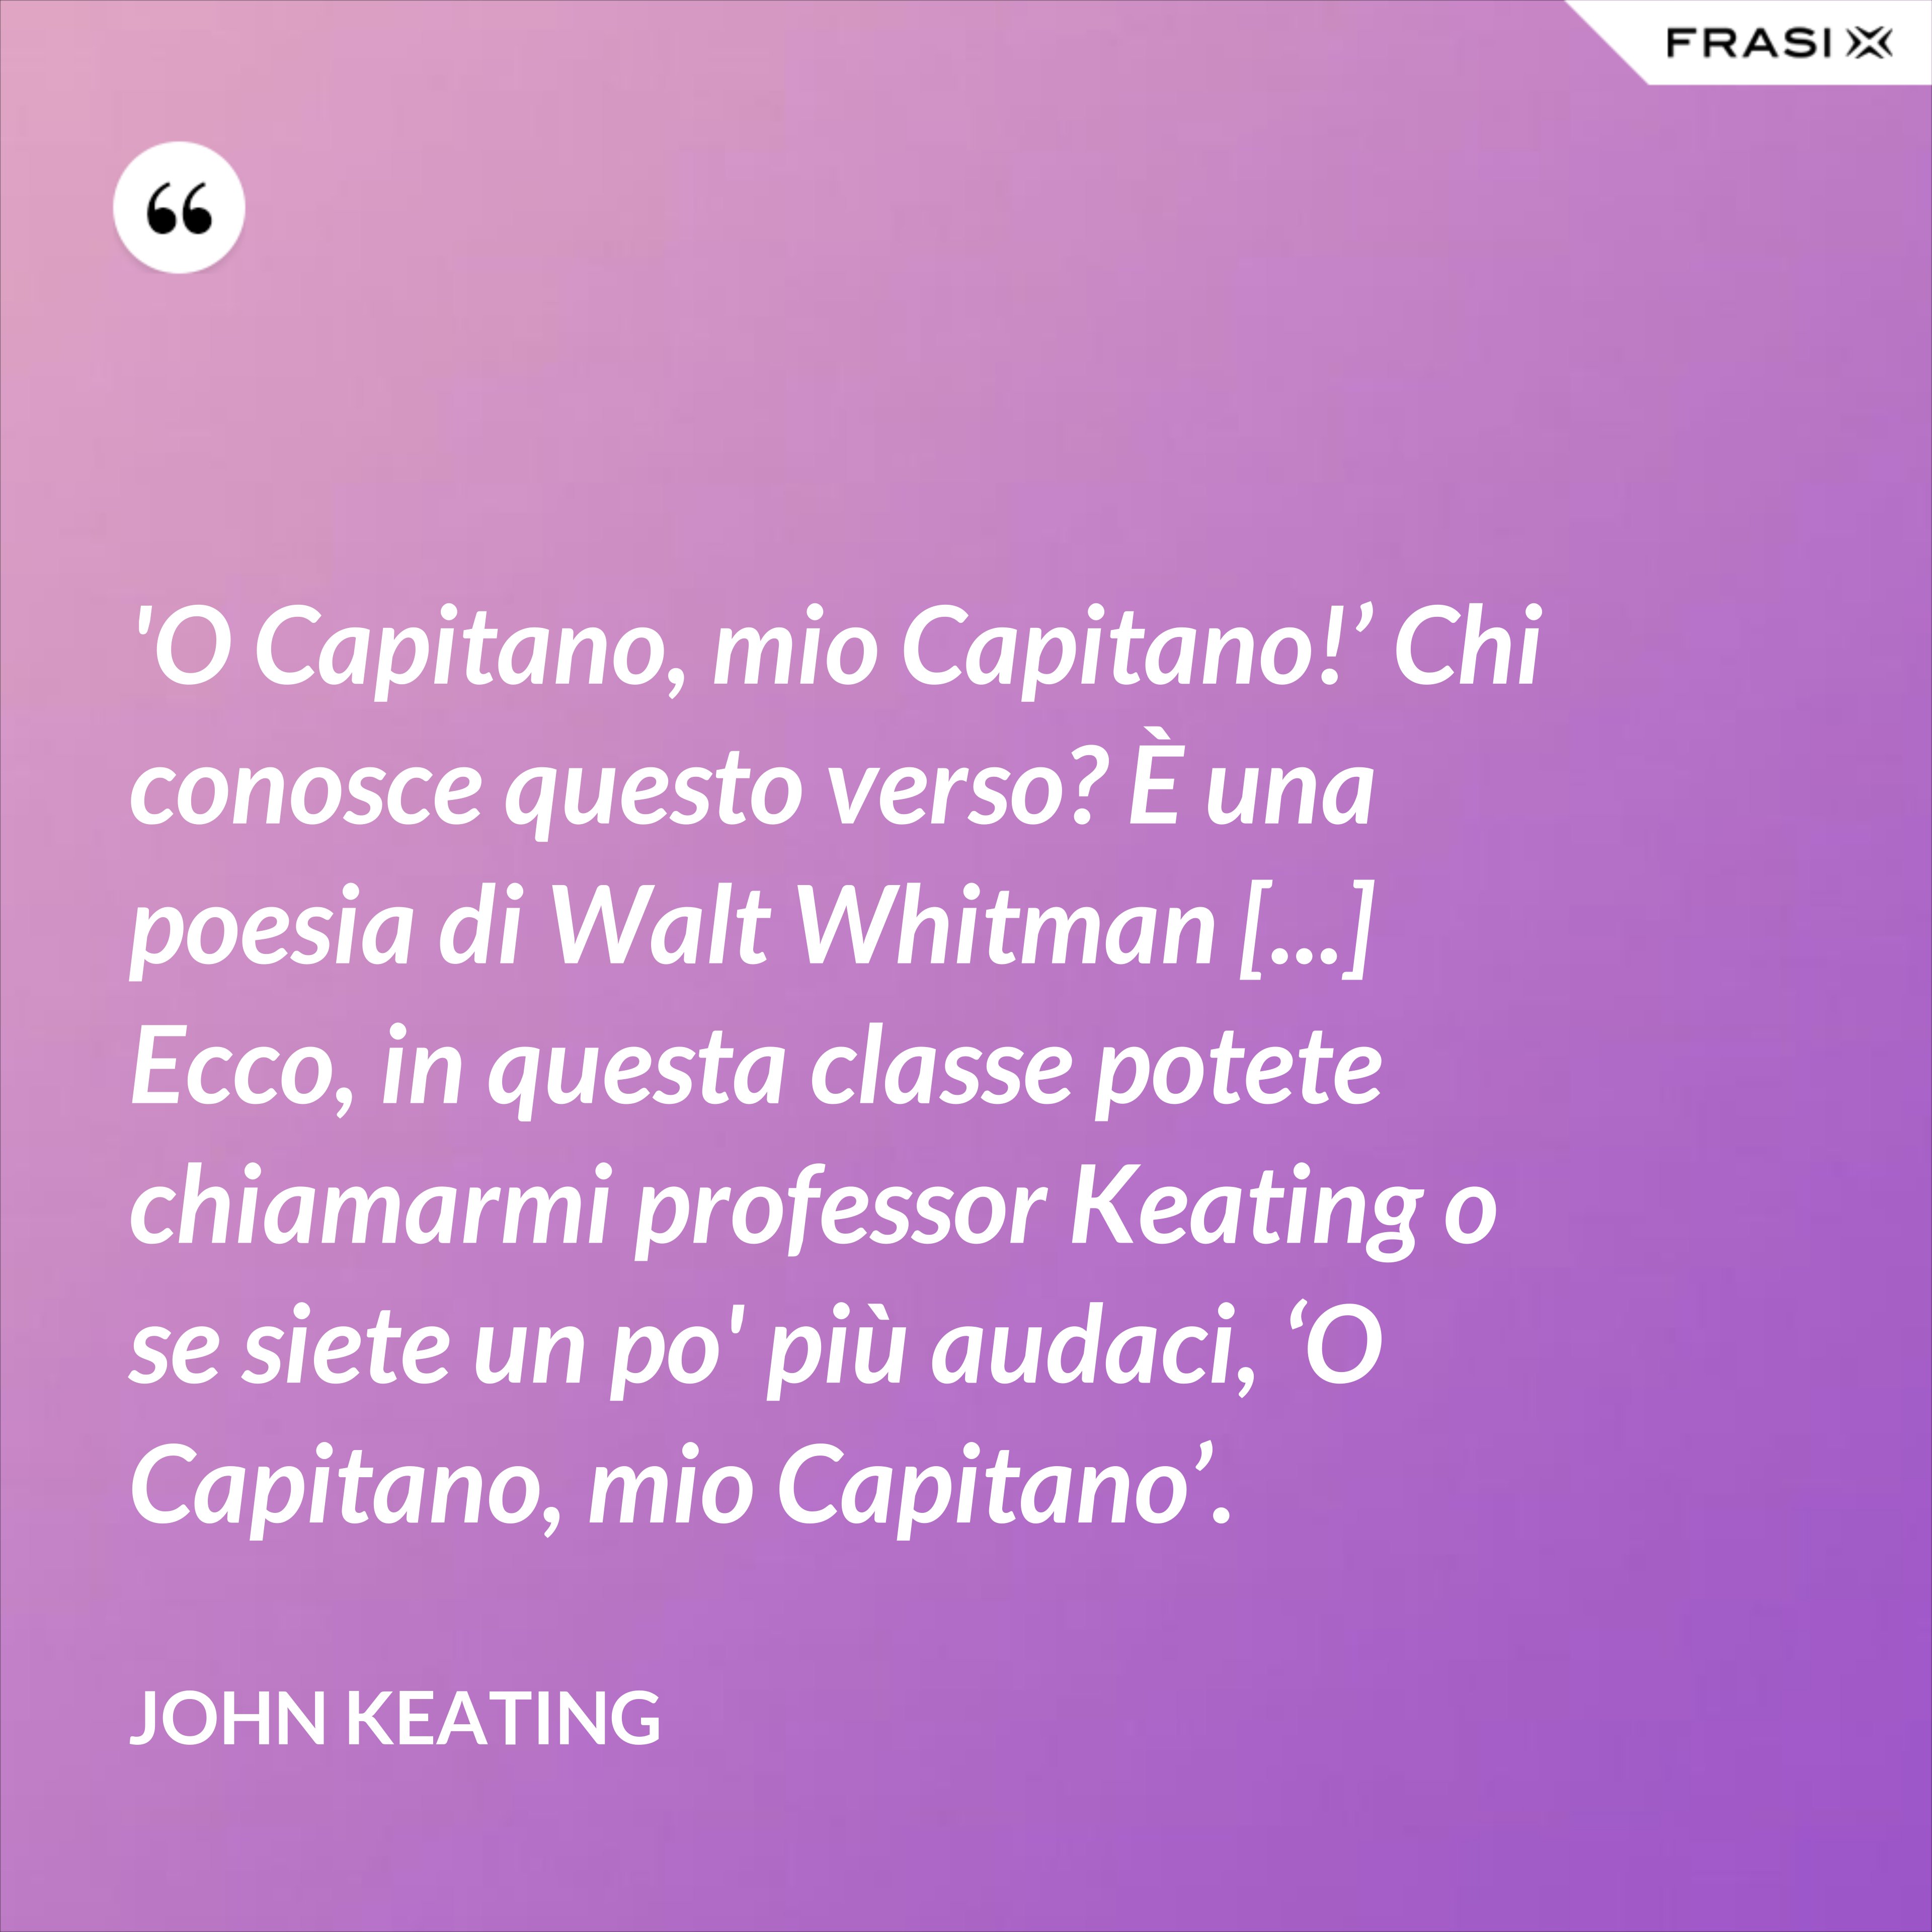 'O Capitano, mio Capitano!’ Chi conosce questo verso? È una poesia di Walt Whitman [...] Ecco, in questa classe potete chiamarmi professor Keating o se siete un po' più audaci, ‘O Capitano, mio Capitano’. - John Keating